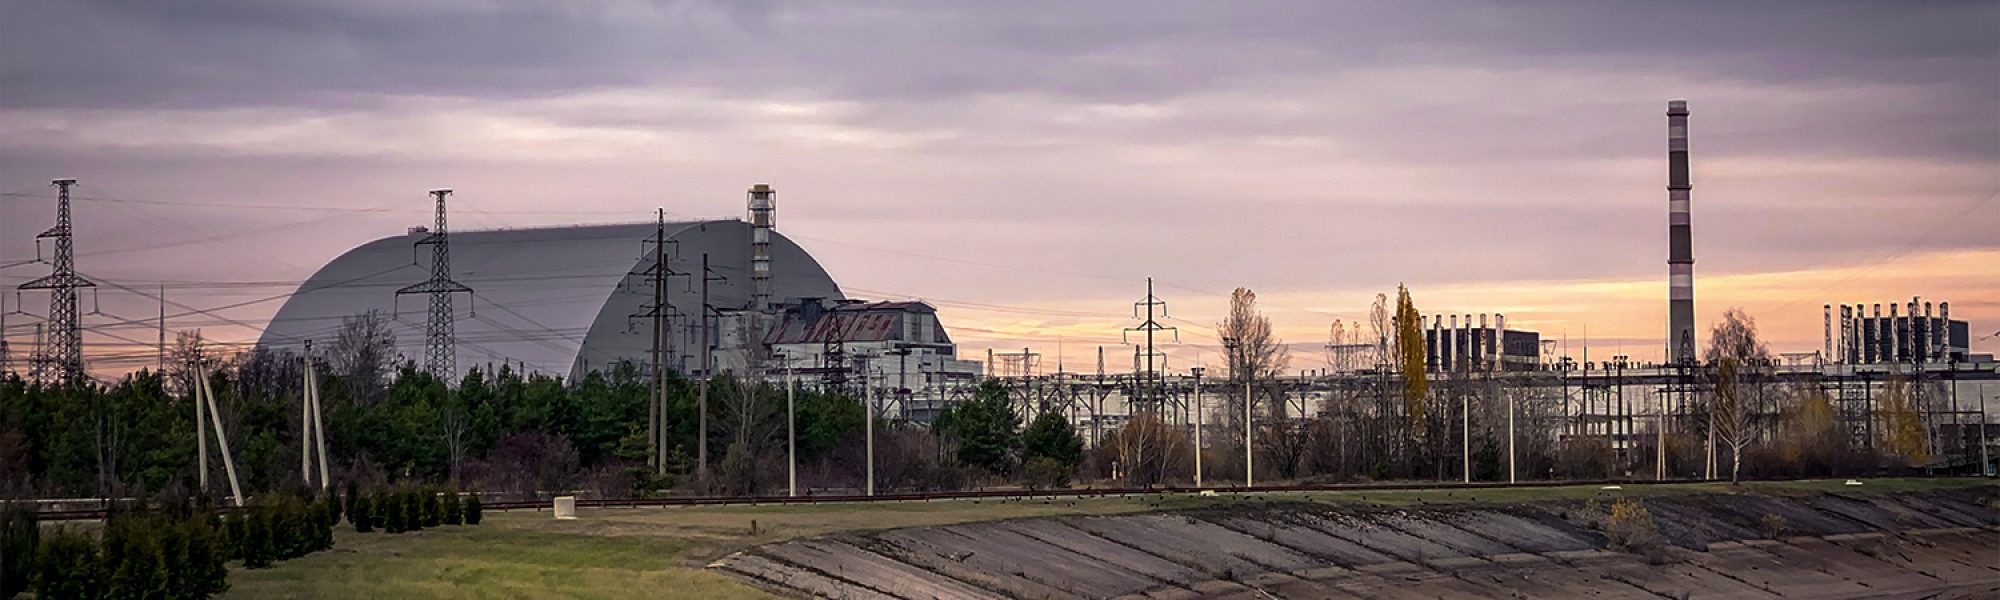 L'alba sulla centrale nucleare di Chernobyl